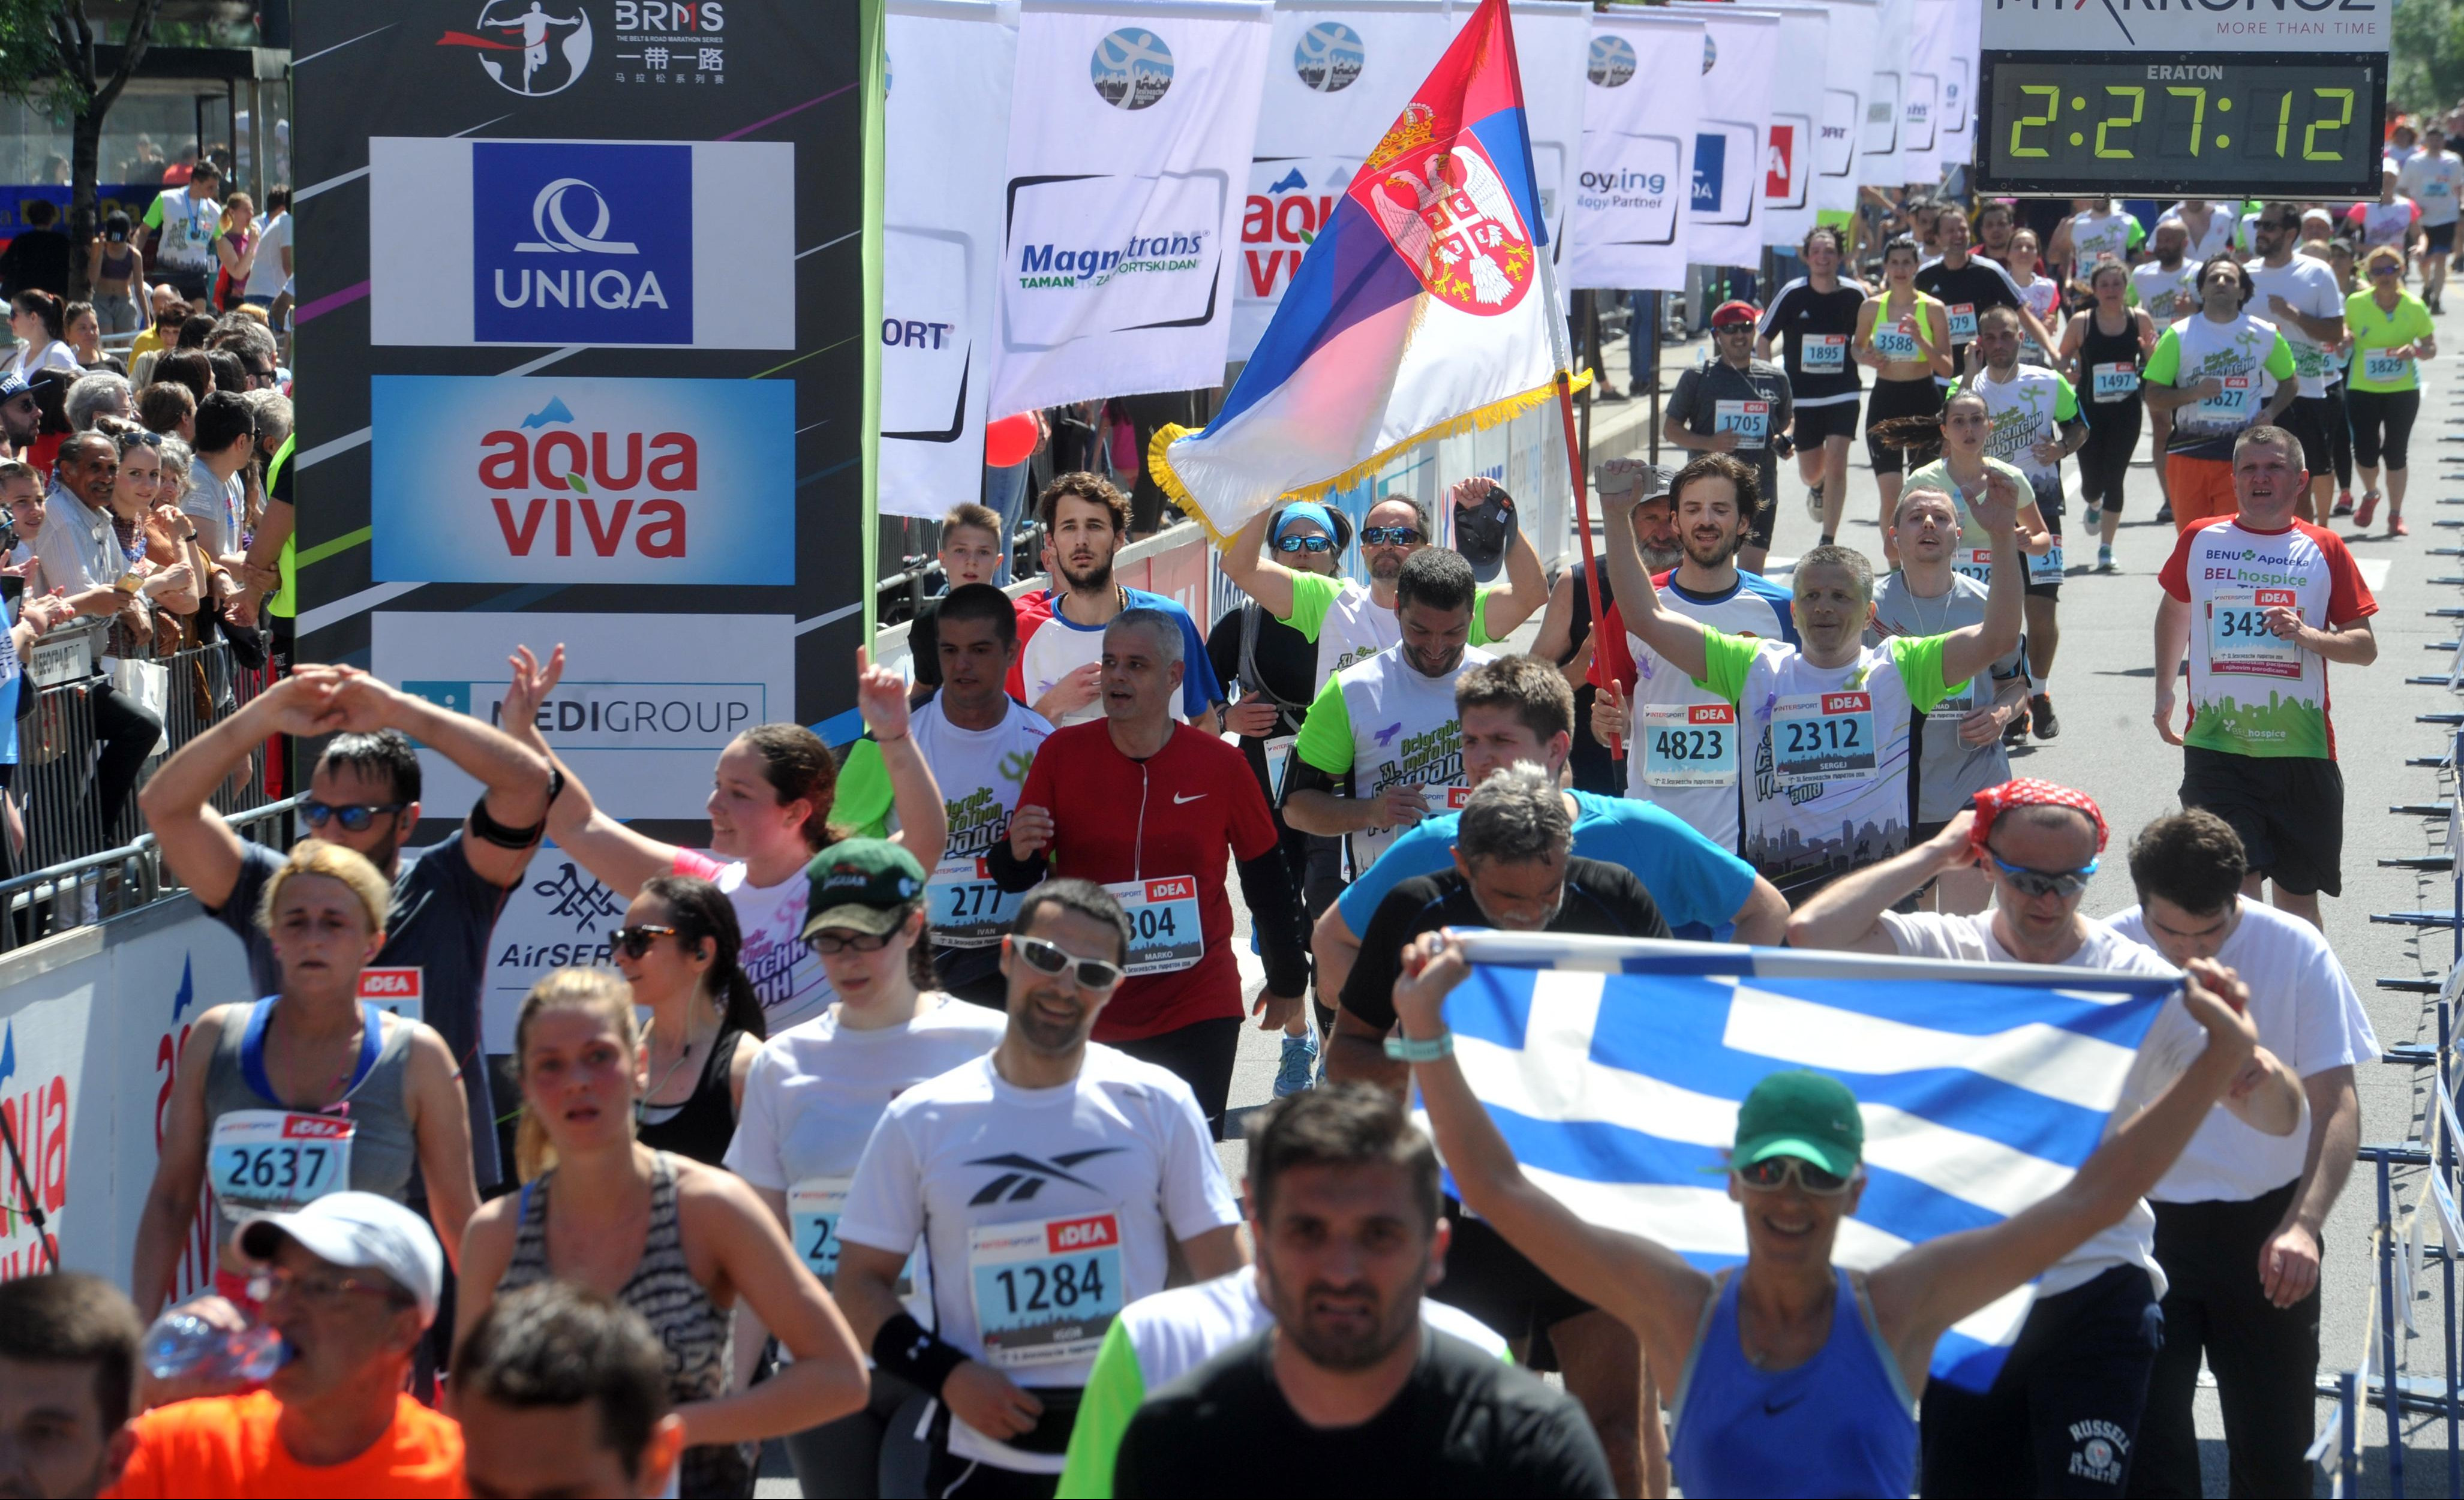 SPEKTAKL! Sve je spremno za prvi "Serbia Marathon": Beograd je danas centar atletskog sveta!